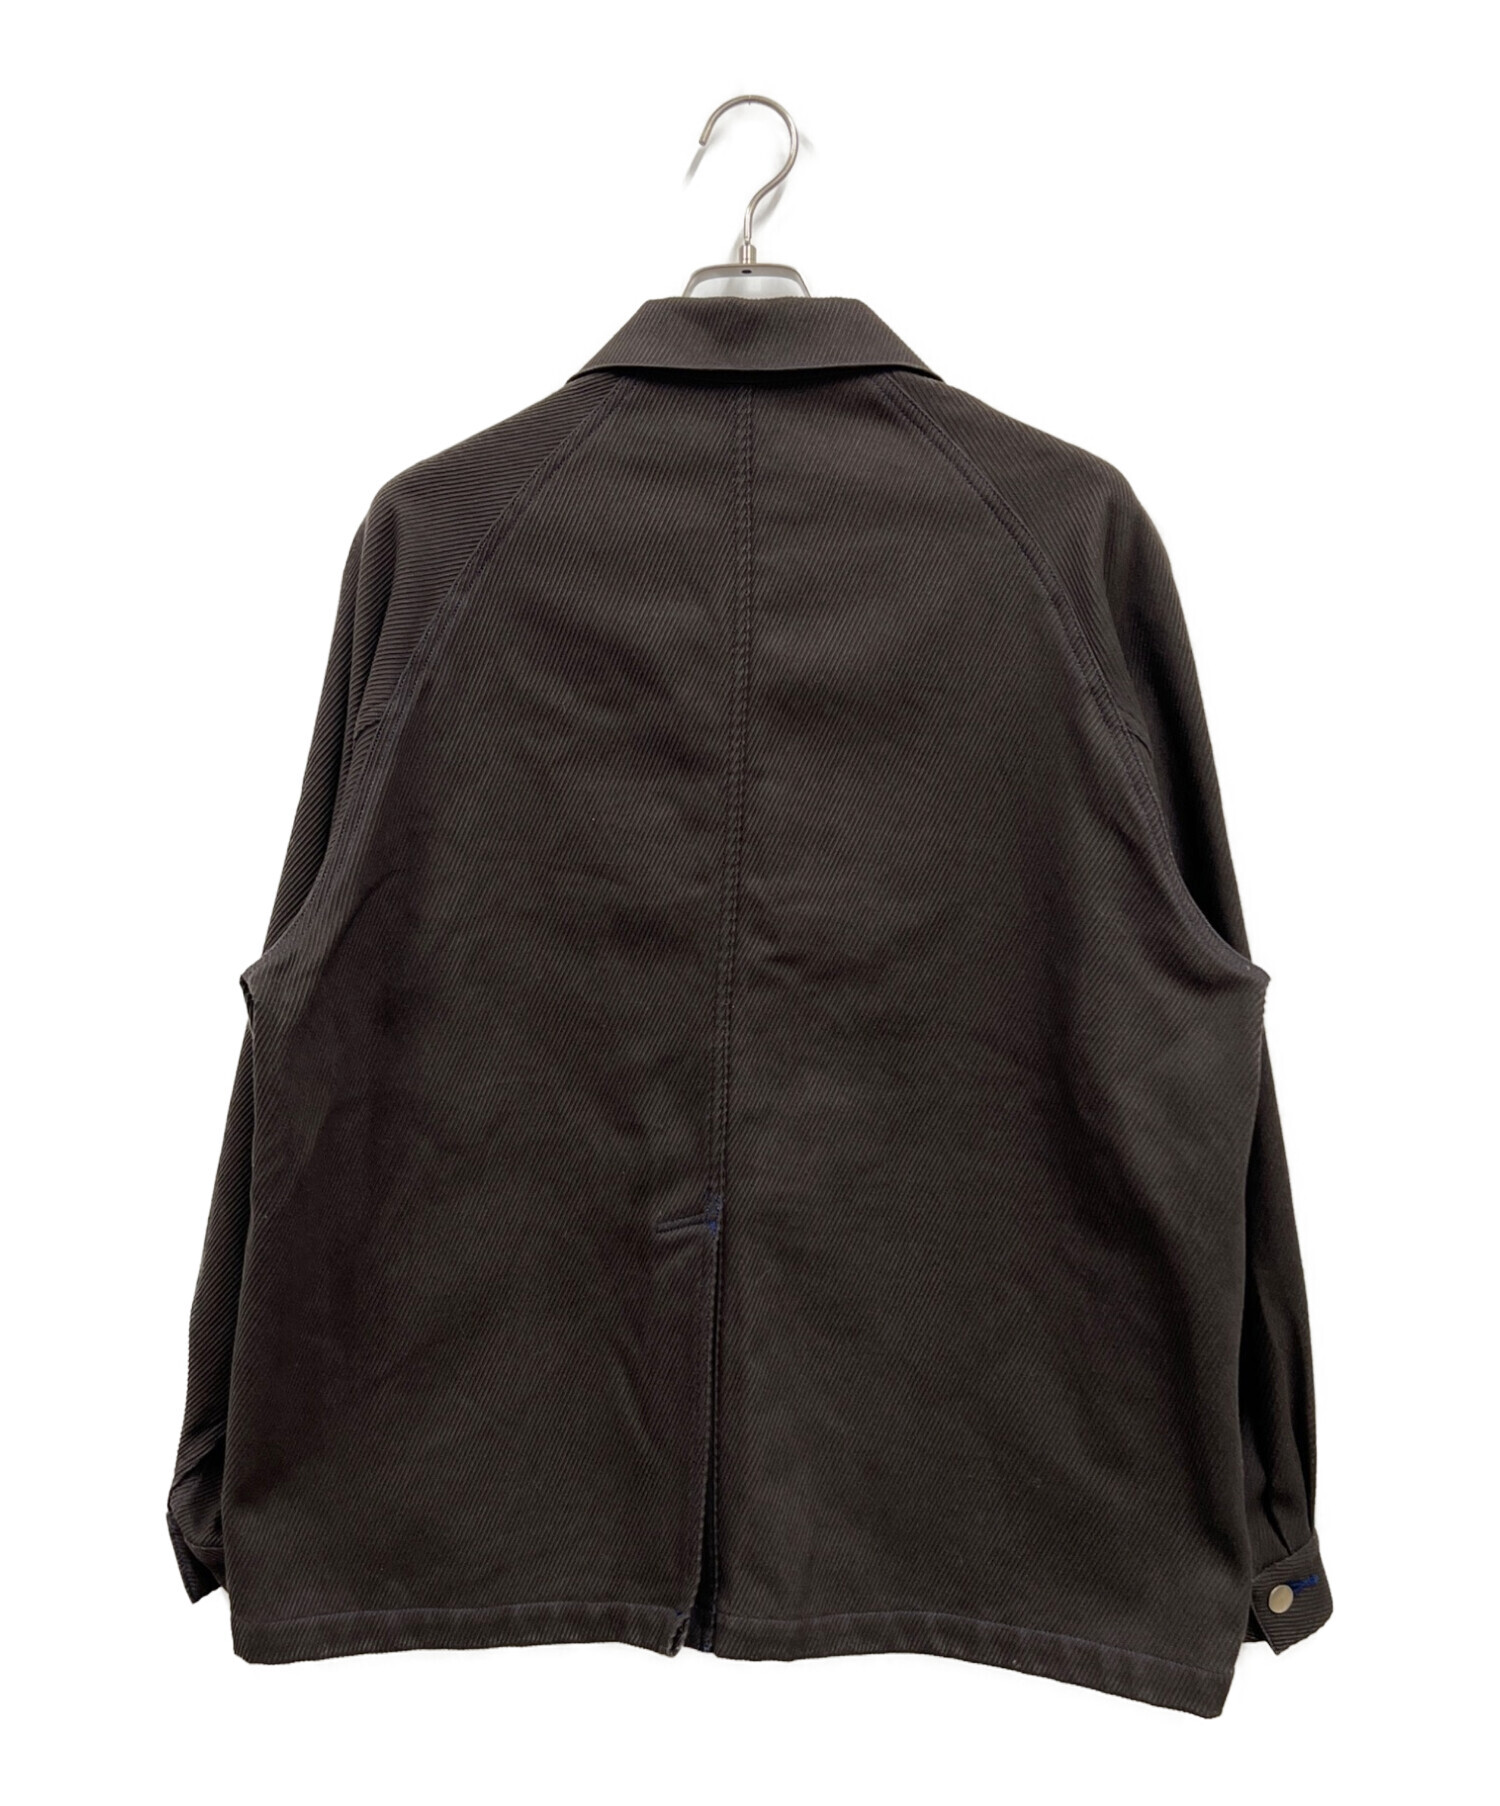 売り直営新品木綿『古渡』墨黒色和装ベストＦサイズ[M13883] 作務衣